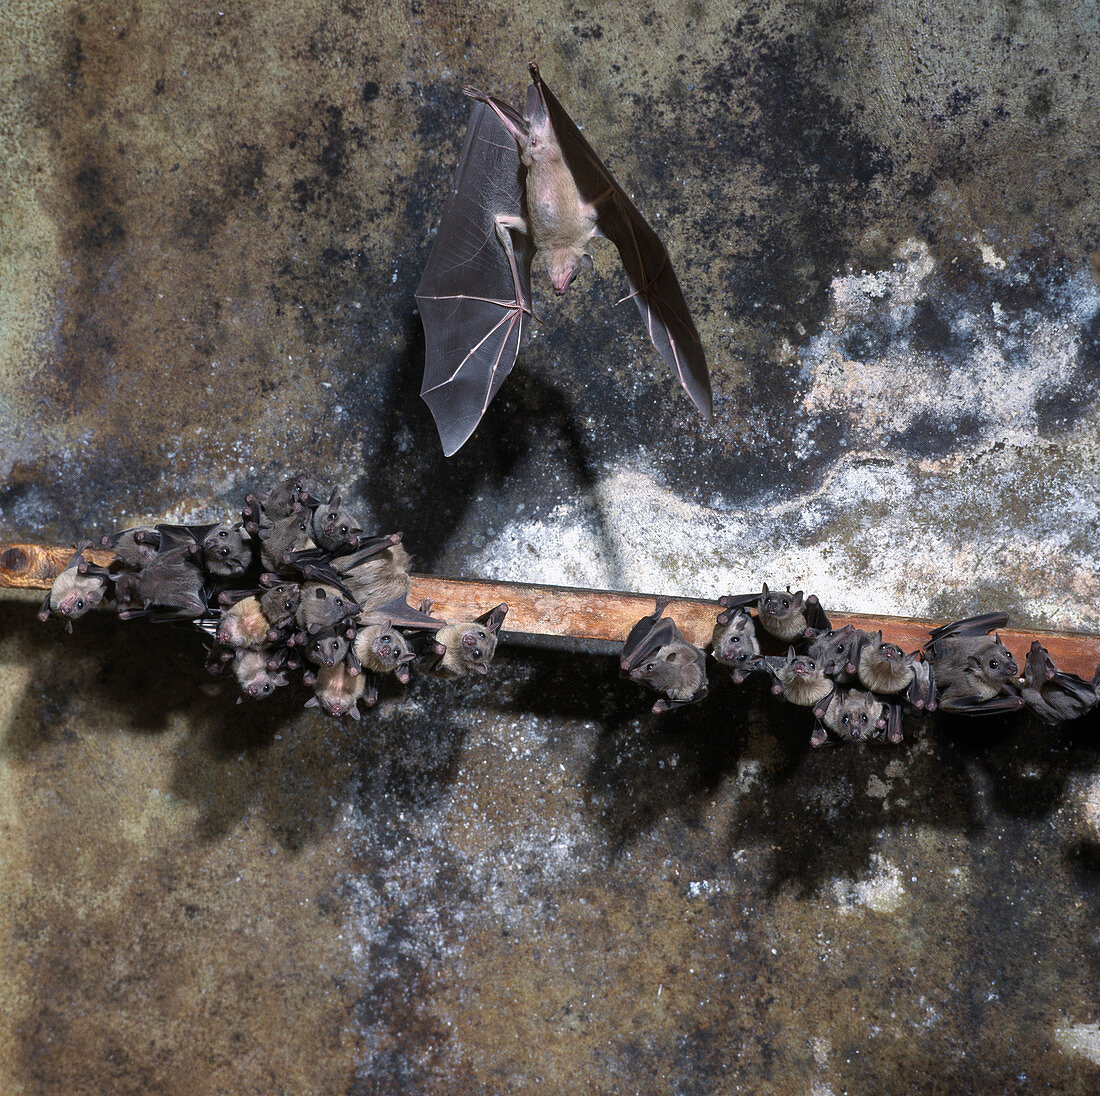 Egyptian fruit bats